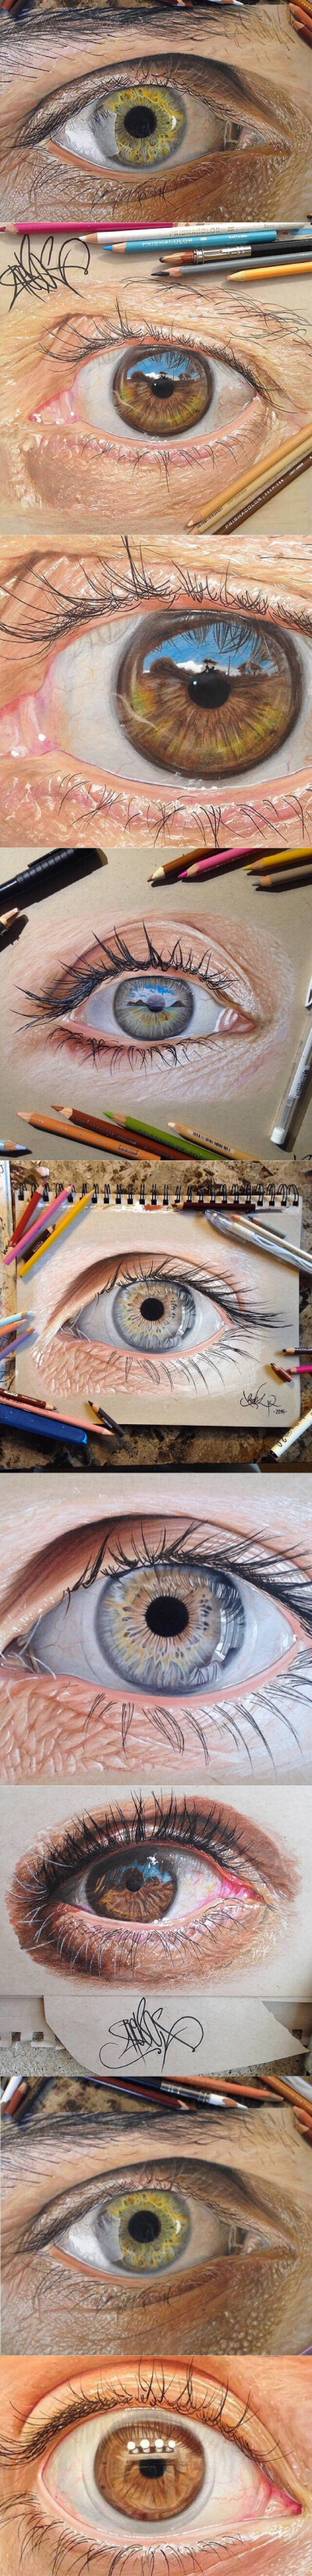 19岁的德克萨斯艺术家Jose Vergara，用彩色铅笔创作了这些笔法精细的眼睛画作，眉目间形神具备，丝毫不逊色于拍摄的数码作品，很让人震惊。